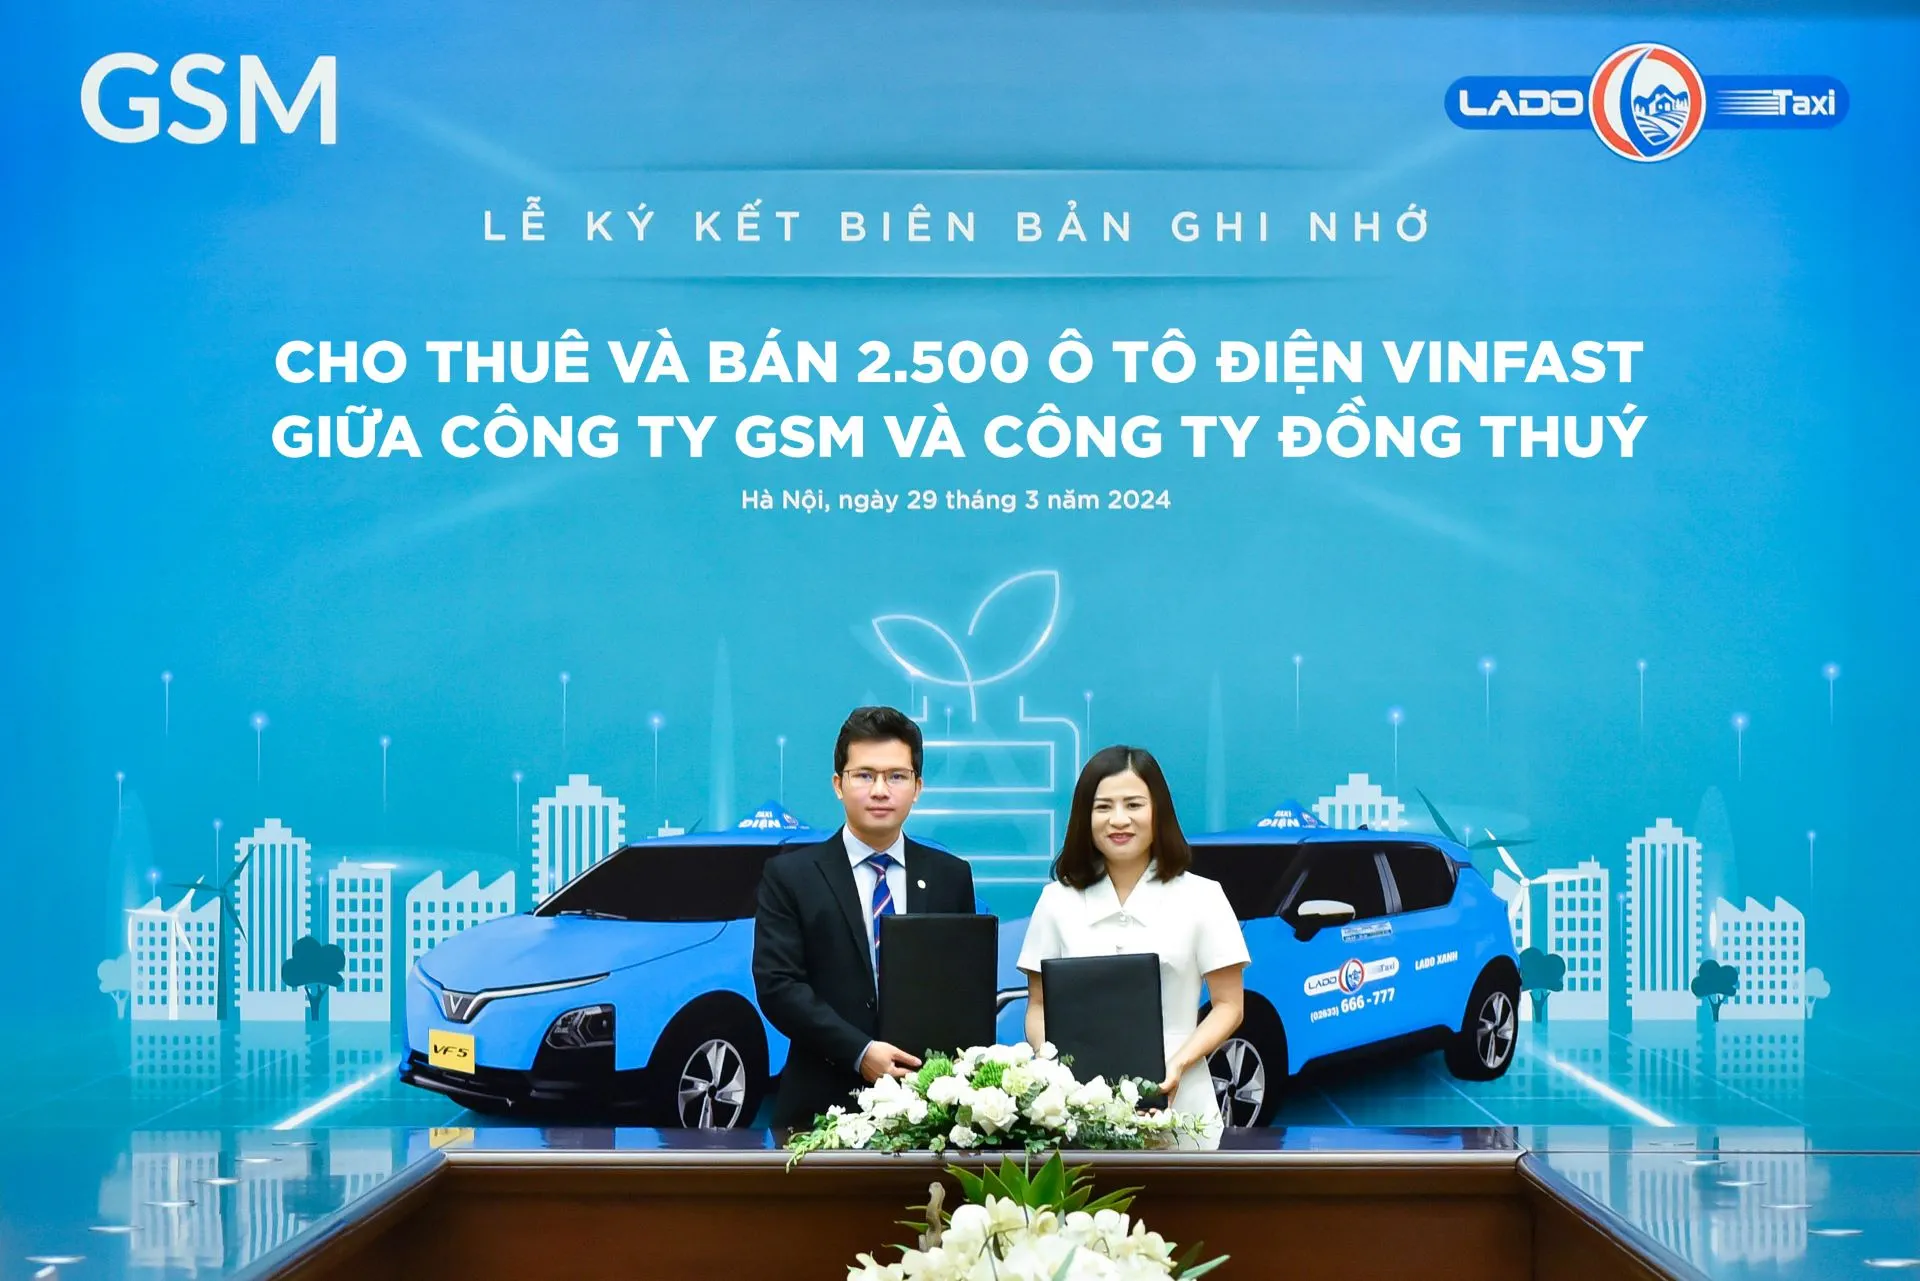 Lado Taxi mở rộng quy mô đội xe điện với thỏa thuận mua & thuê 2,500 xe VinFast từ GSM